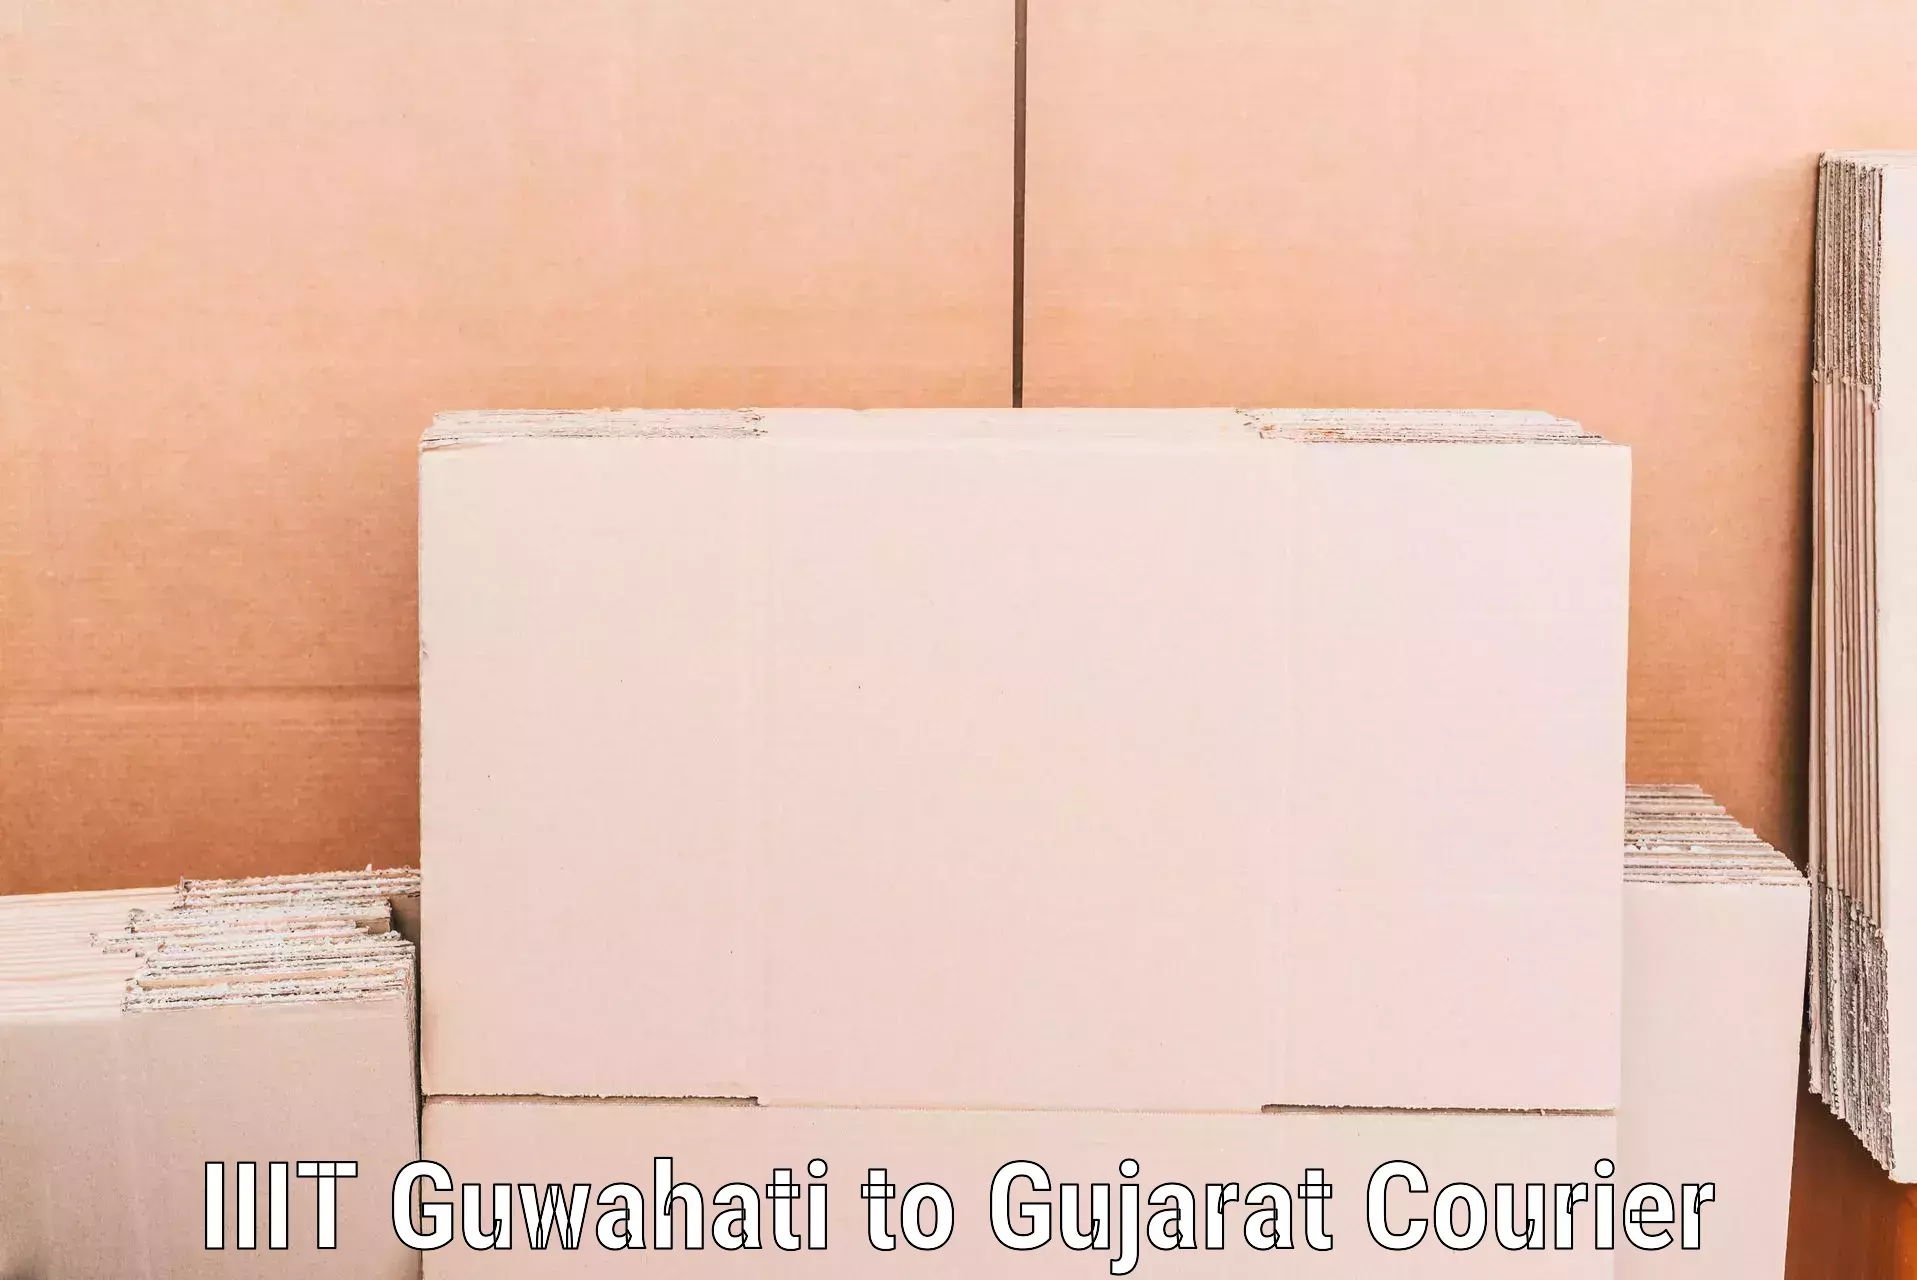 Efficient moving company IIIT Guwahati to Gandhinagar